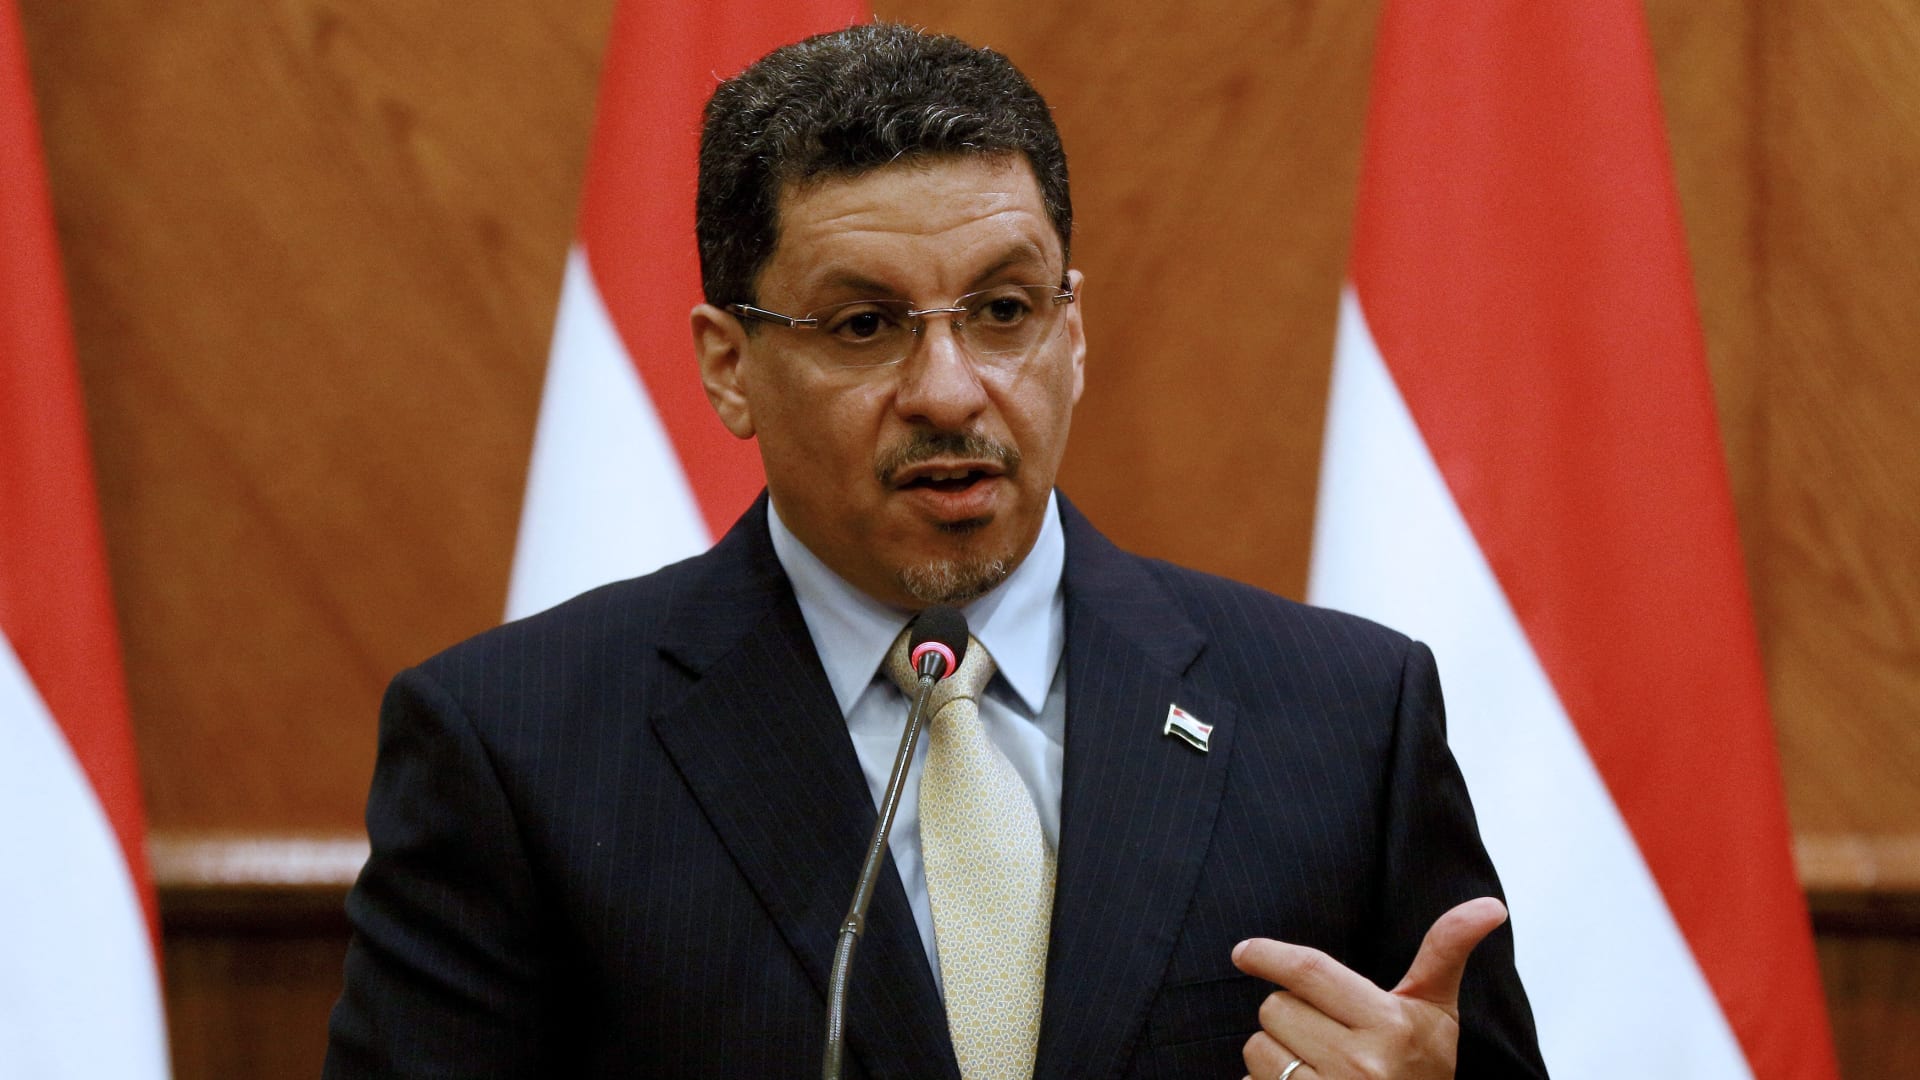 وزير خارجية اليمن يرد لـCNN على طرح "الانفصال الجنوبي".. ويصف أزمة "صافر" بـ"قنبلة موقوتة"